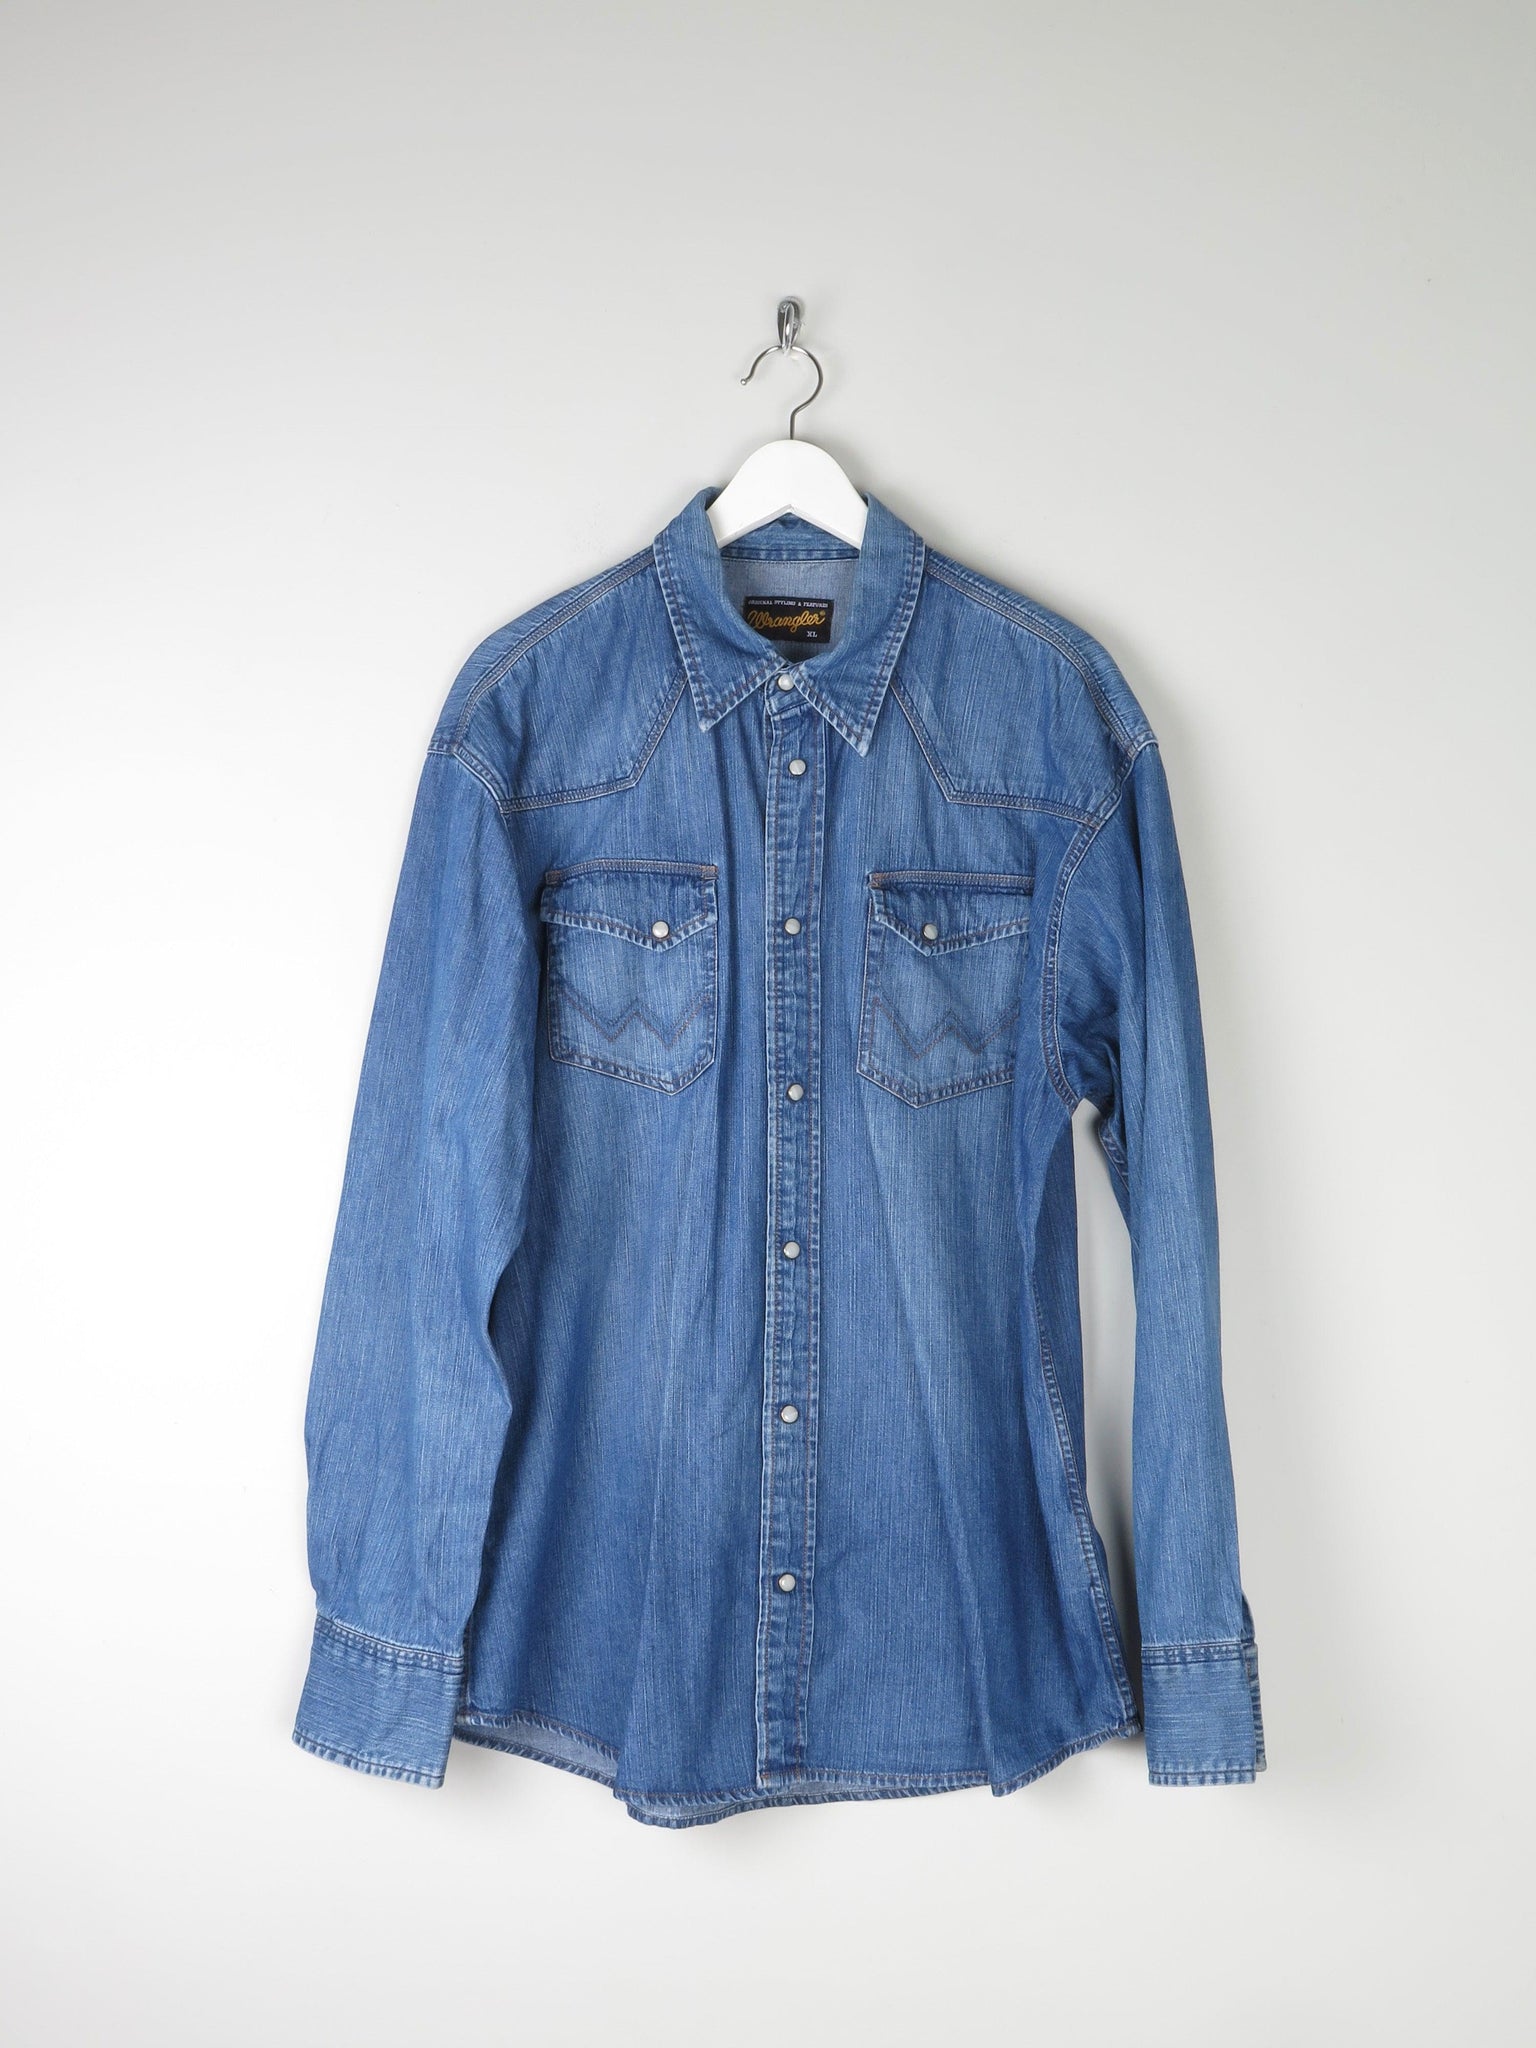 Men's Blue Western Denim Wrangler Shirt XL - The Harlequin